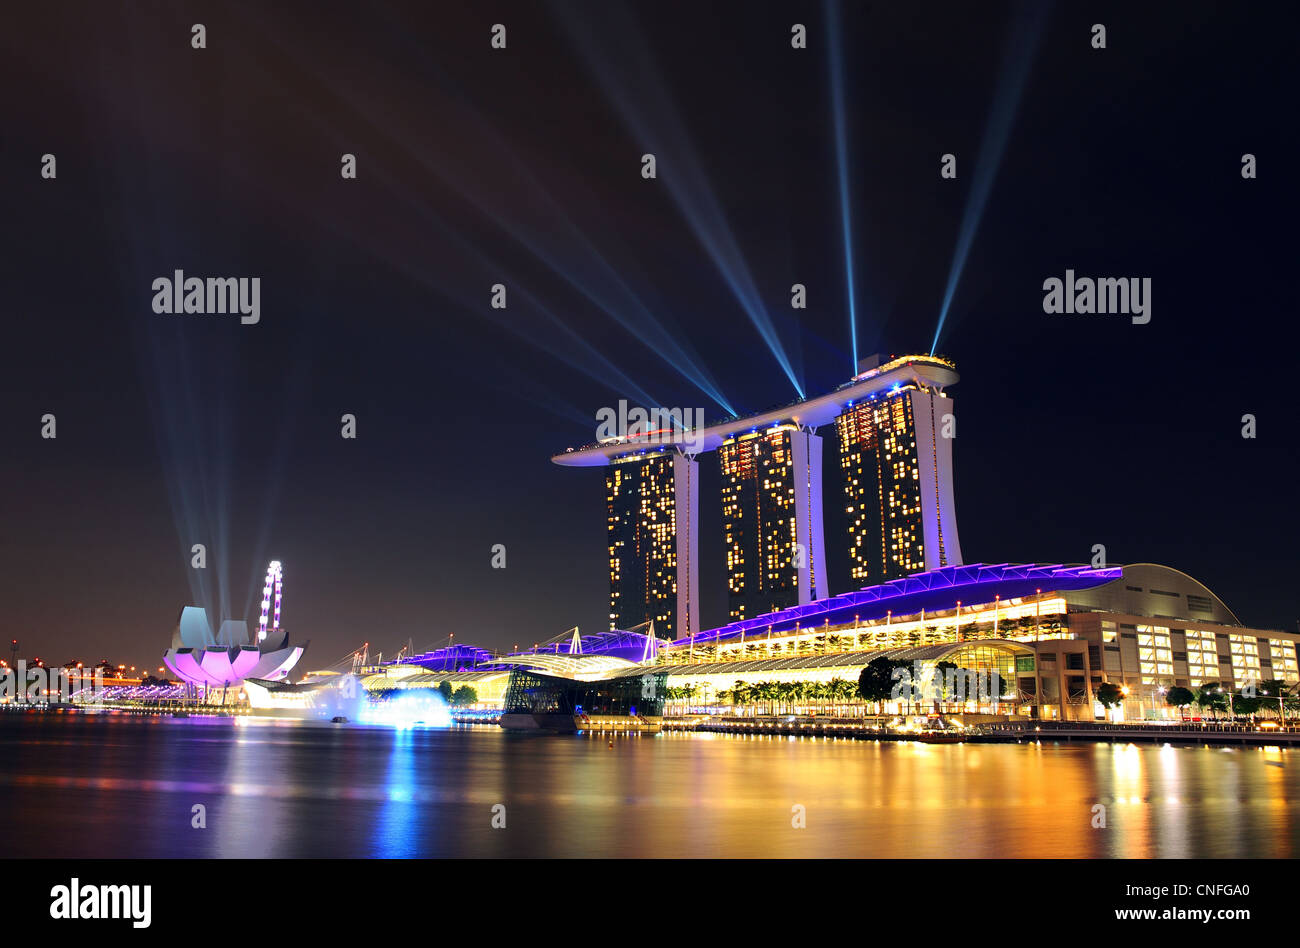 El Marina Bay Sands Hotel, Casino y Shopping Complex en Marina Bay en Singapur. Foto de stock